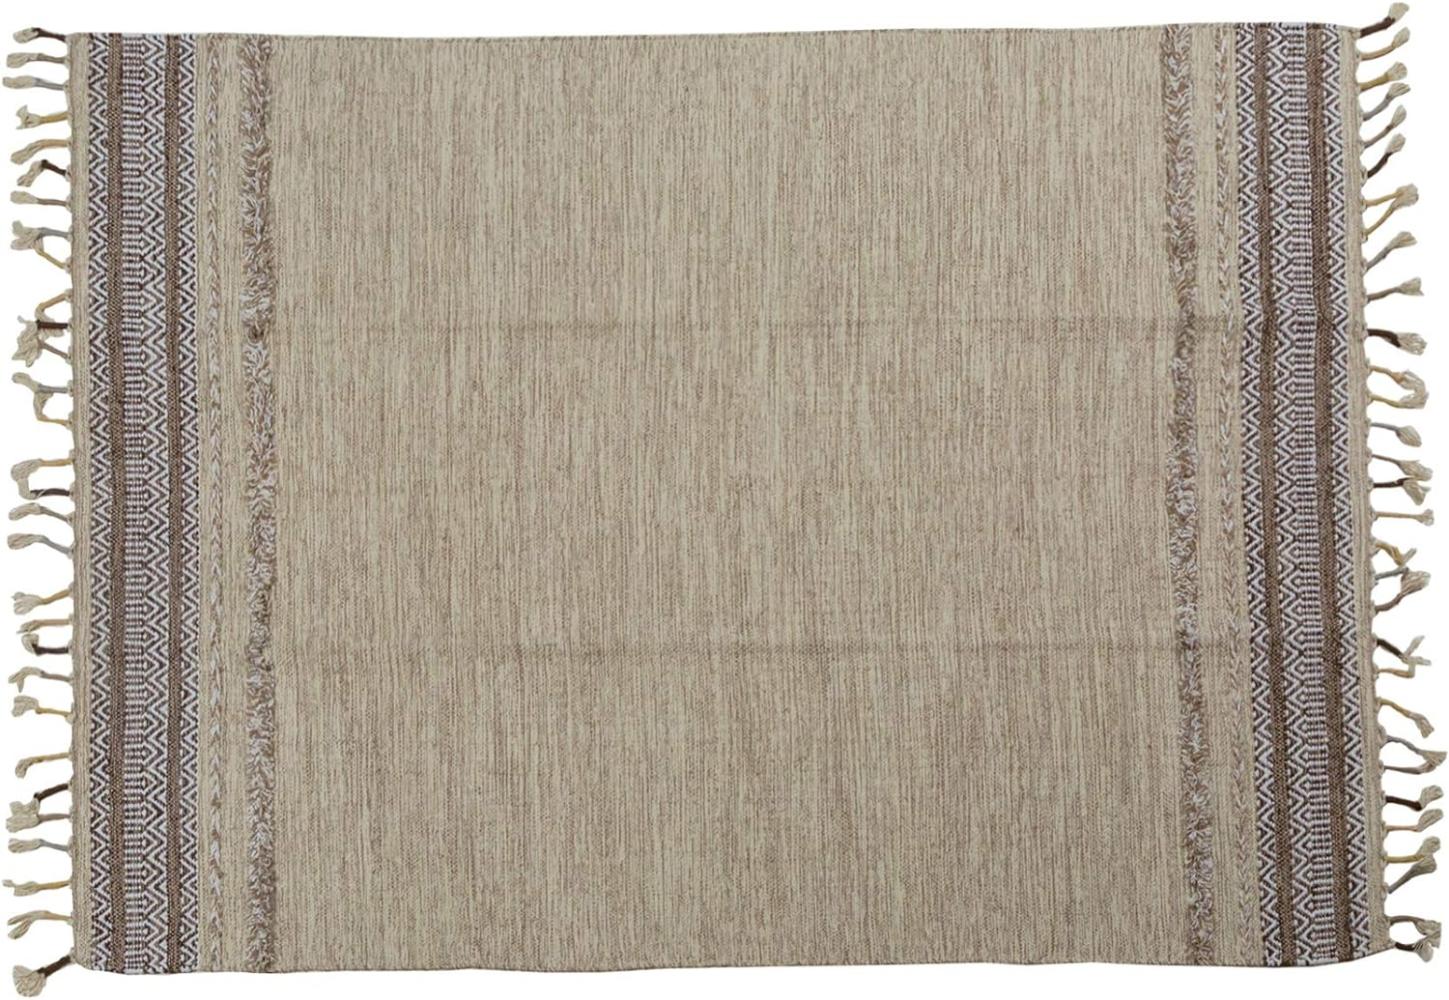 Dmora Moderner Boston-Teppich, Kelim-Stil, 100% Baumwolle, beige, 230x160cm Bild 1